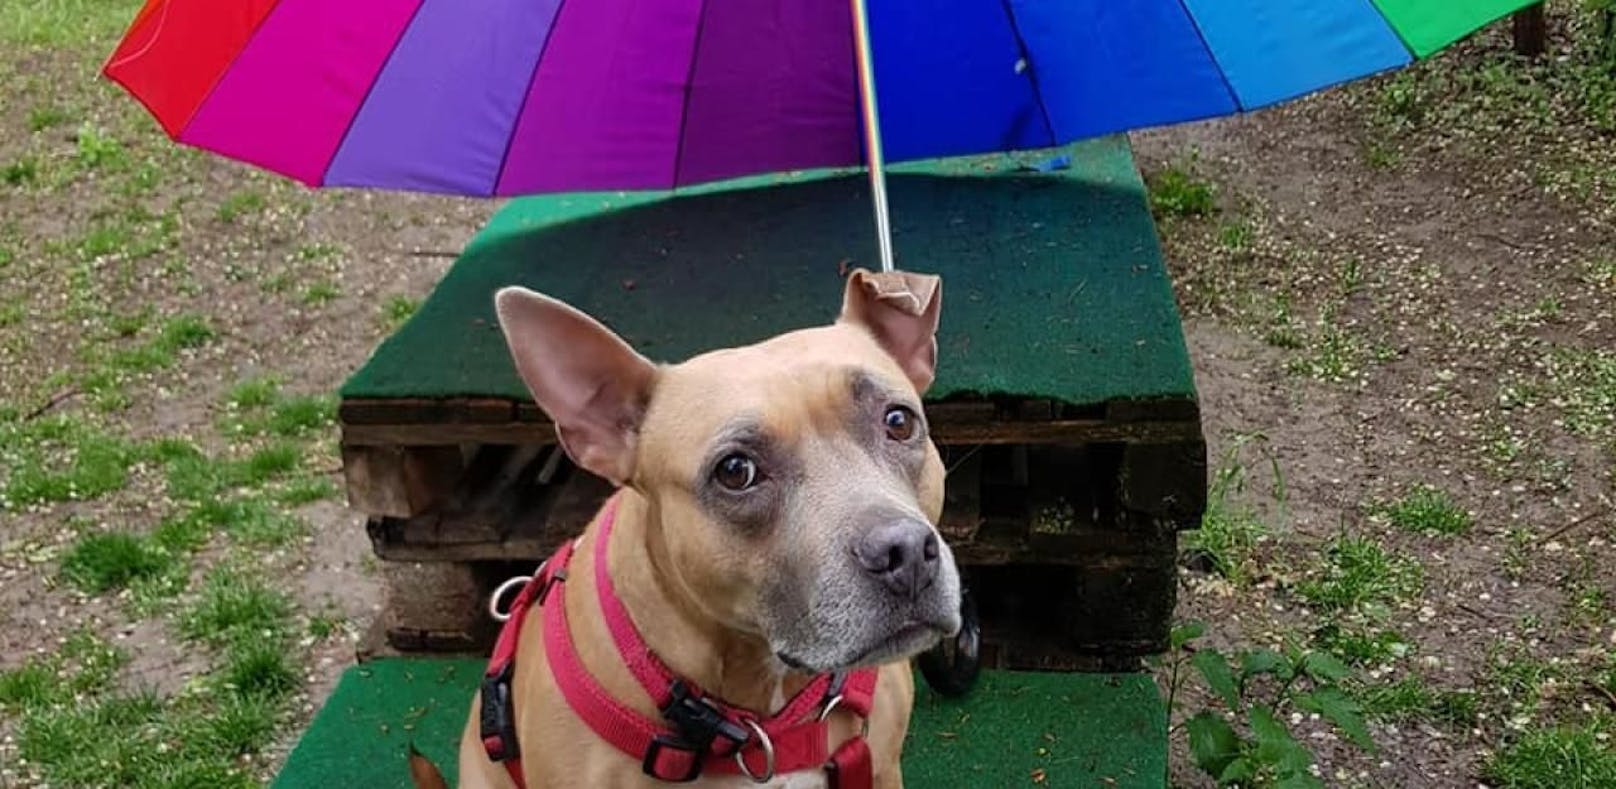 Lea präferiert den Regenschirm.